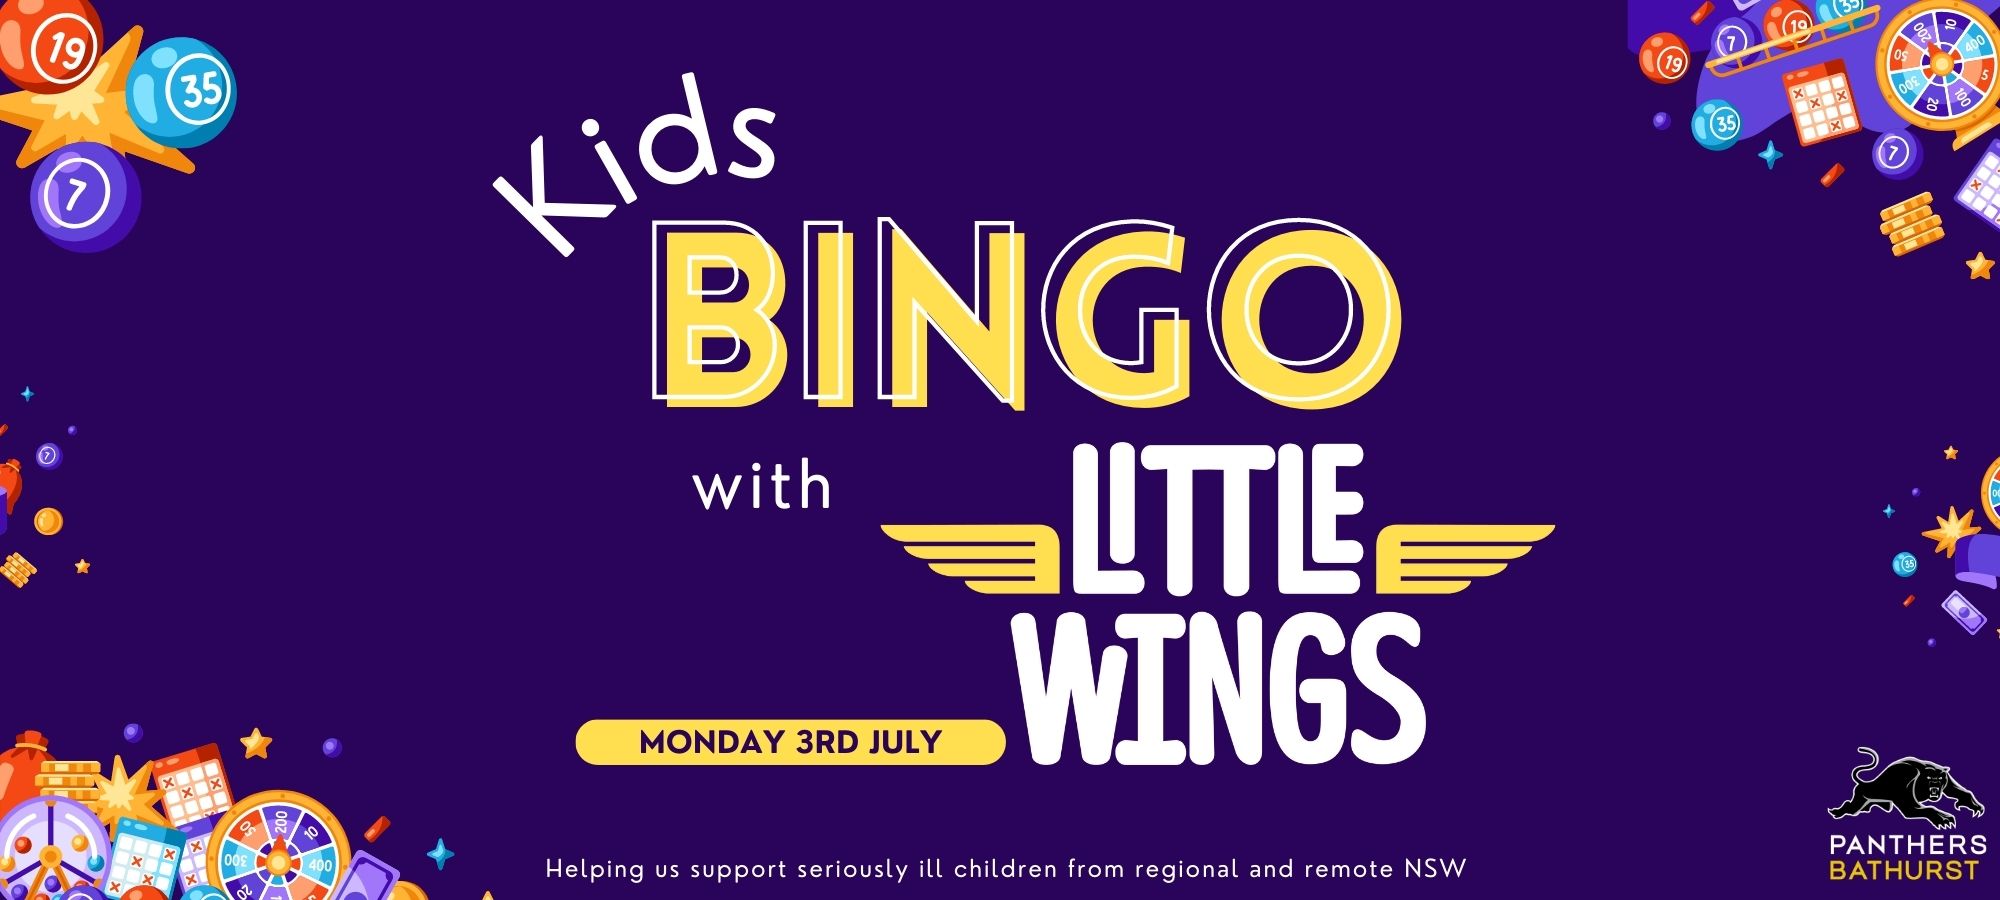 Kids Bingo with Little Wings